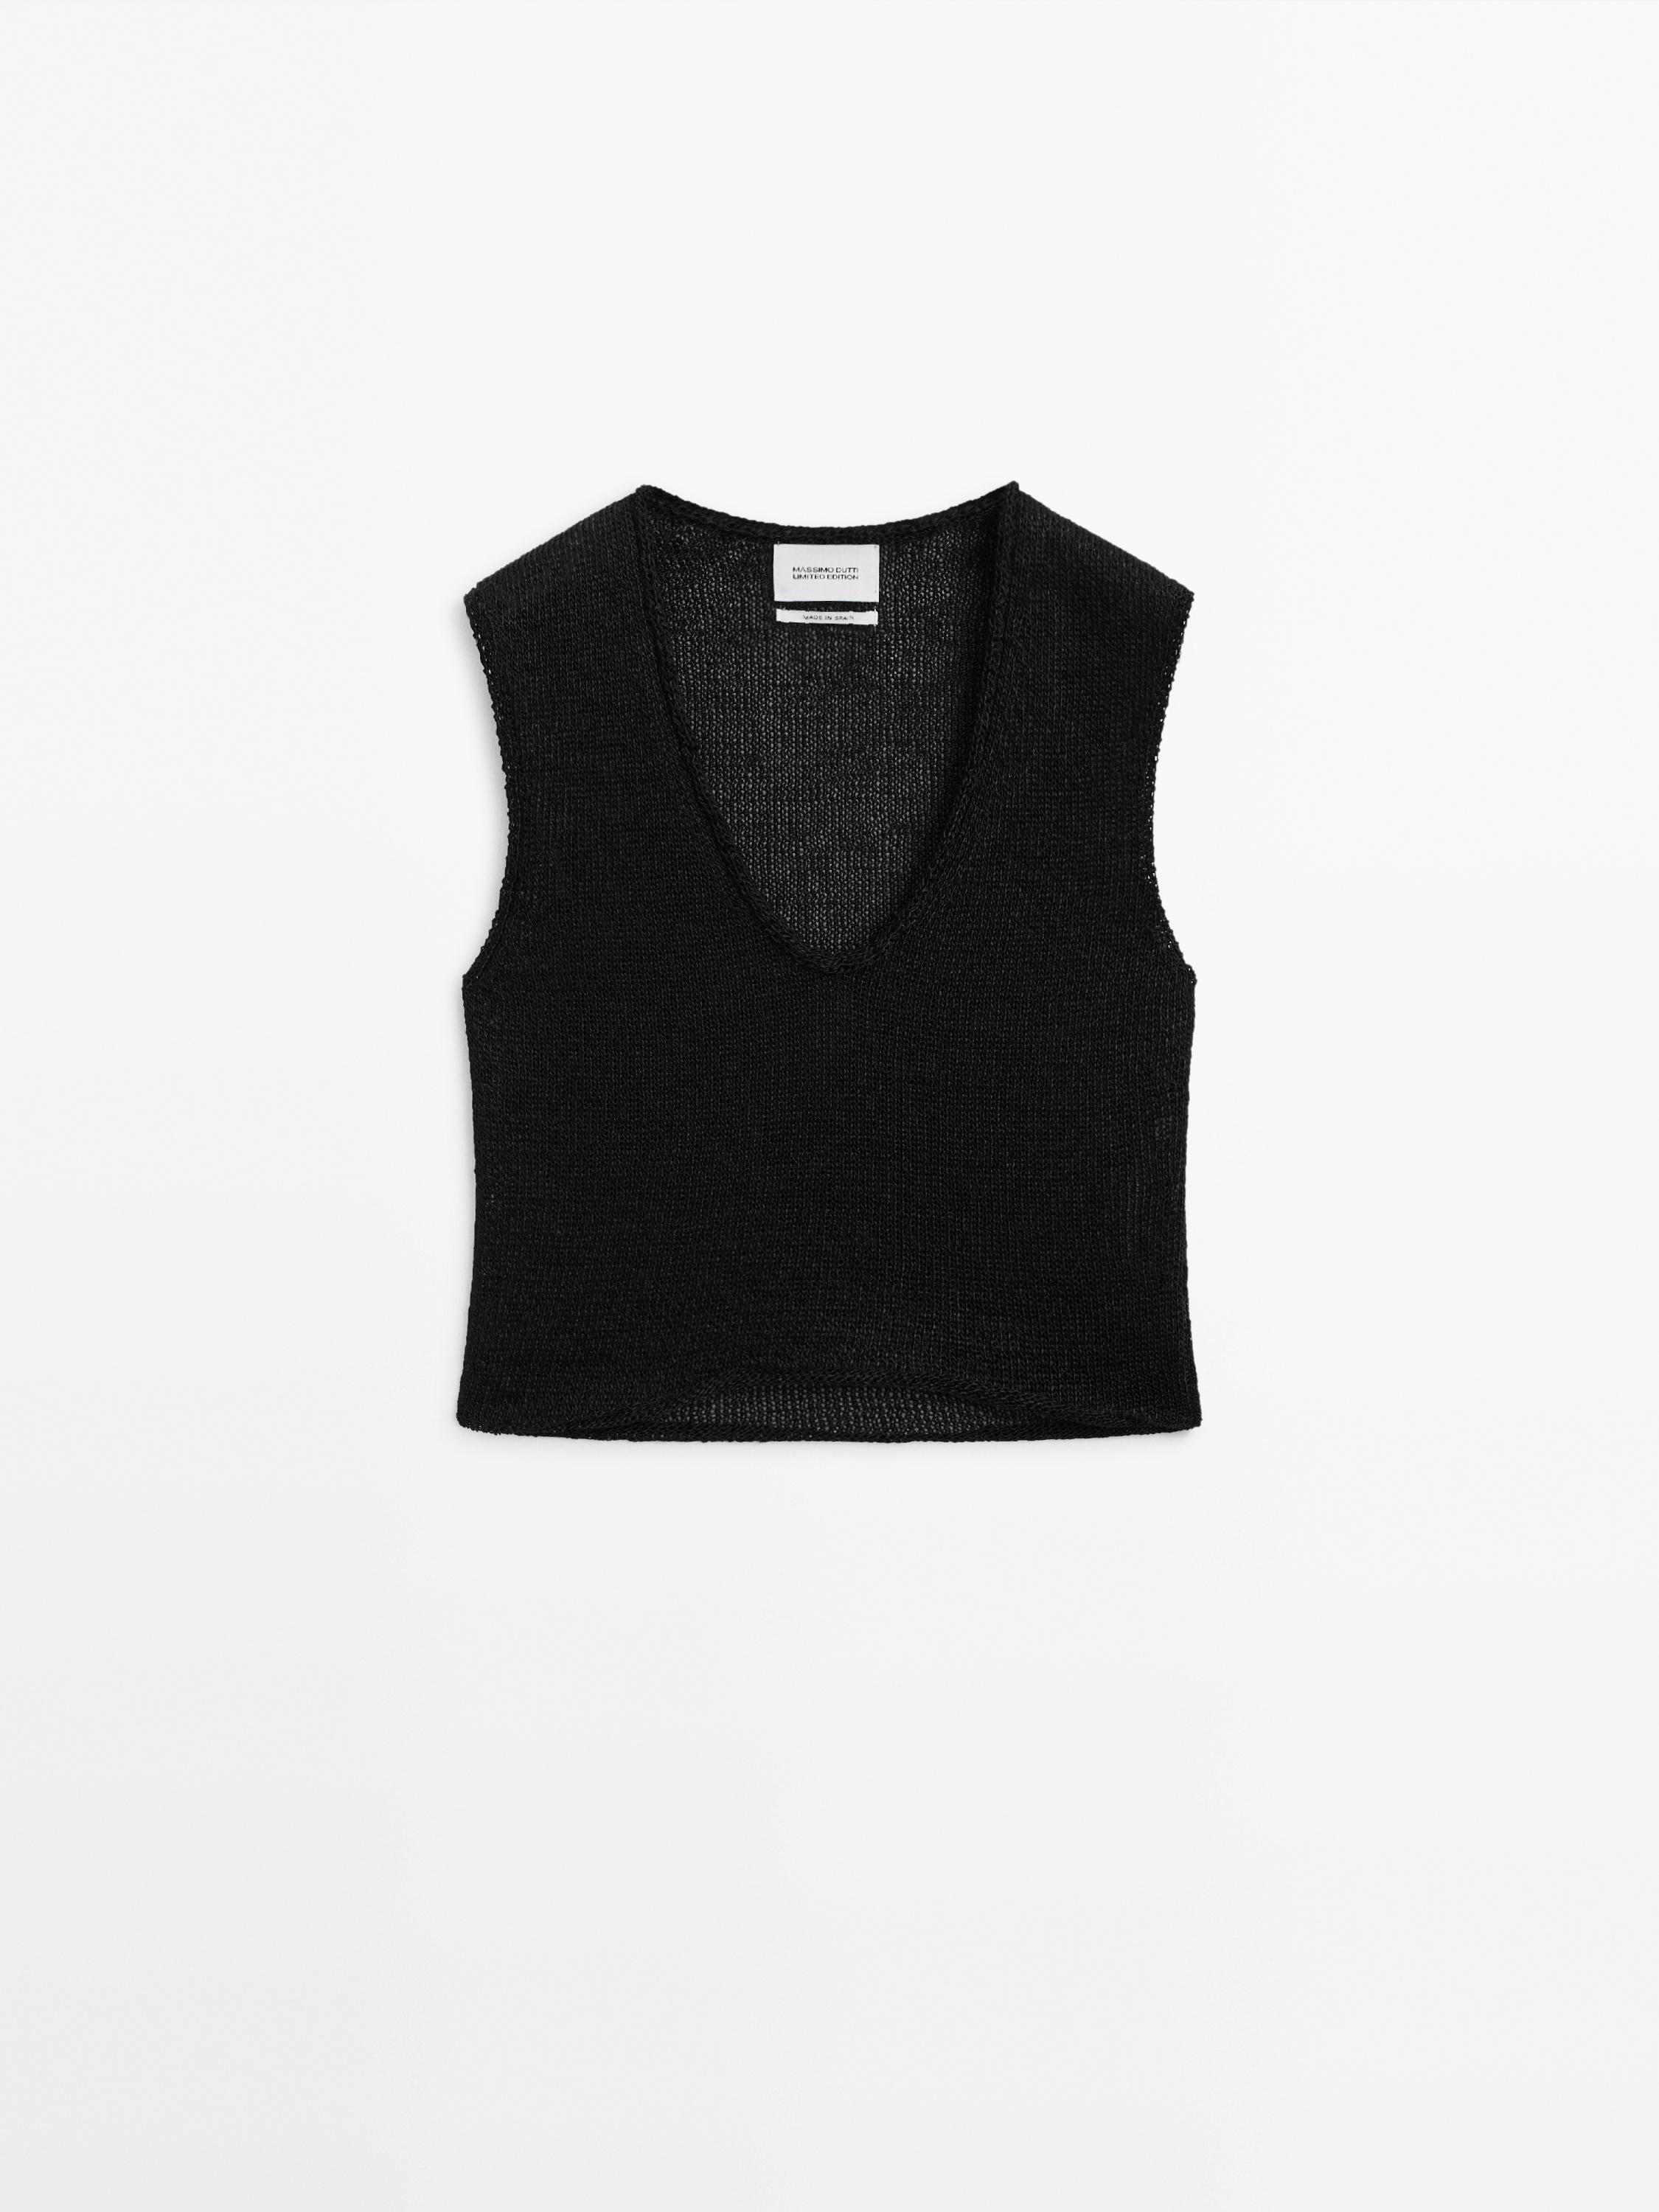 Knit top with neckline detail - Limited Edition - Ecru | ZARA 